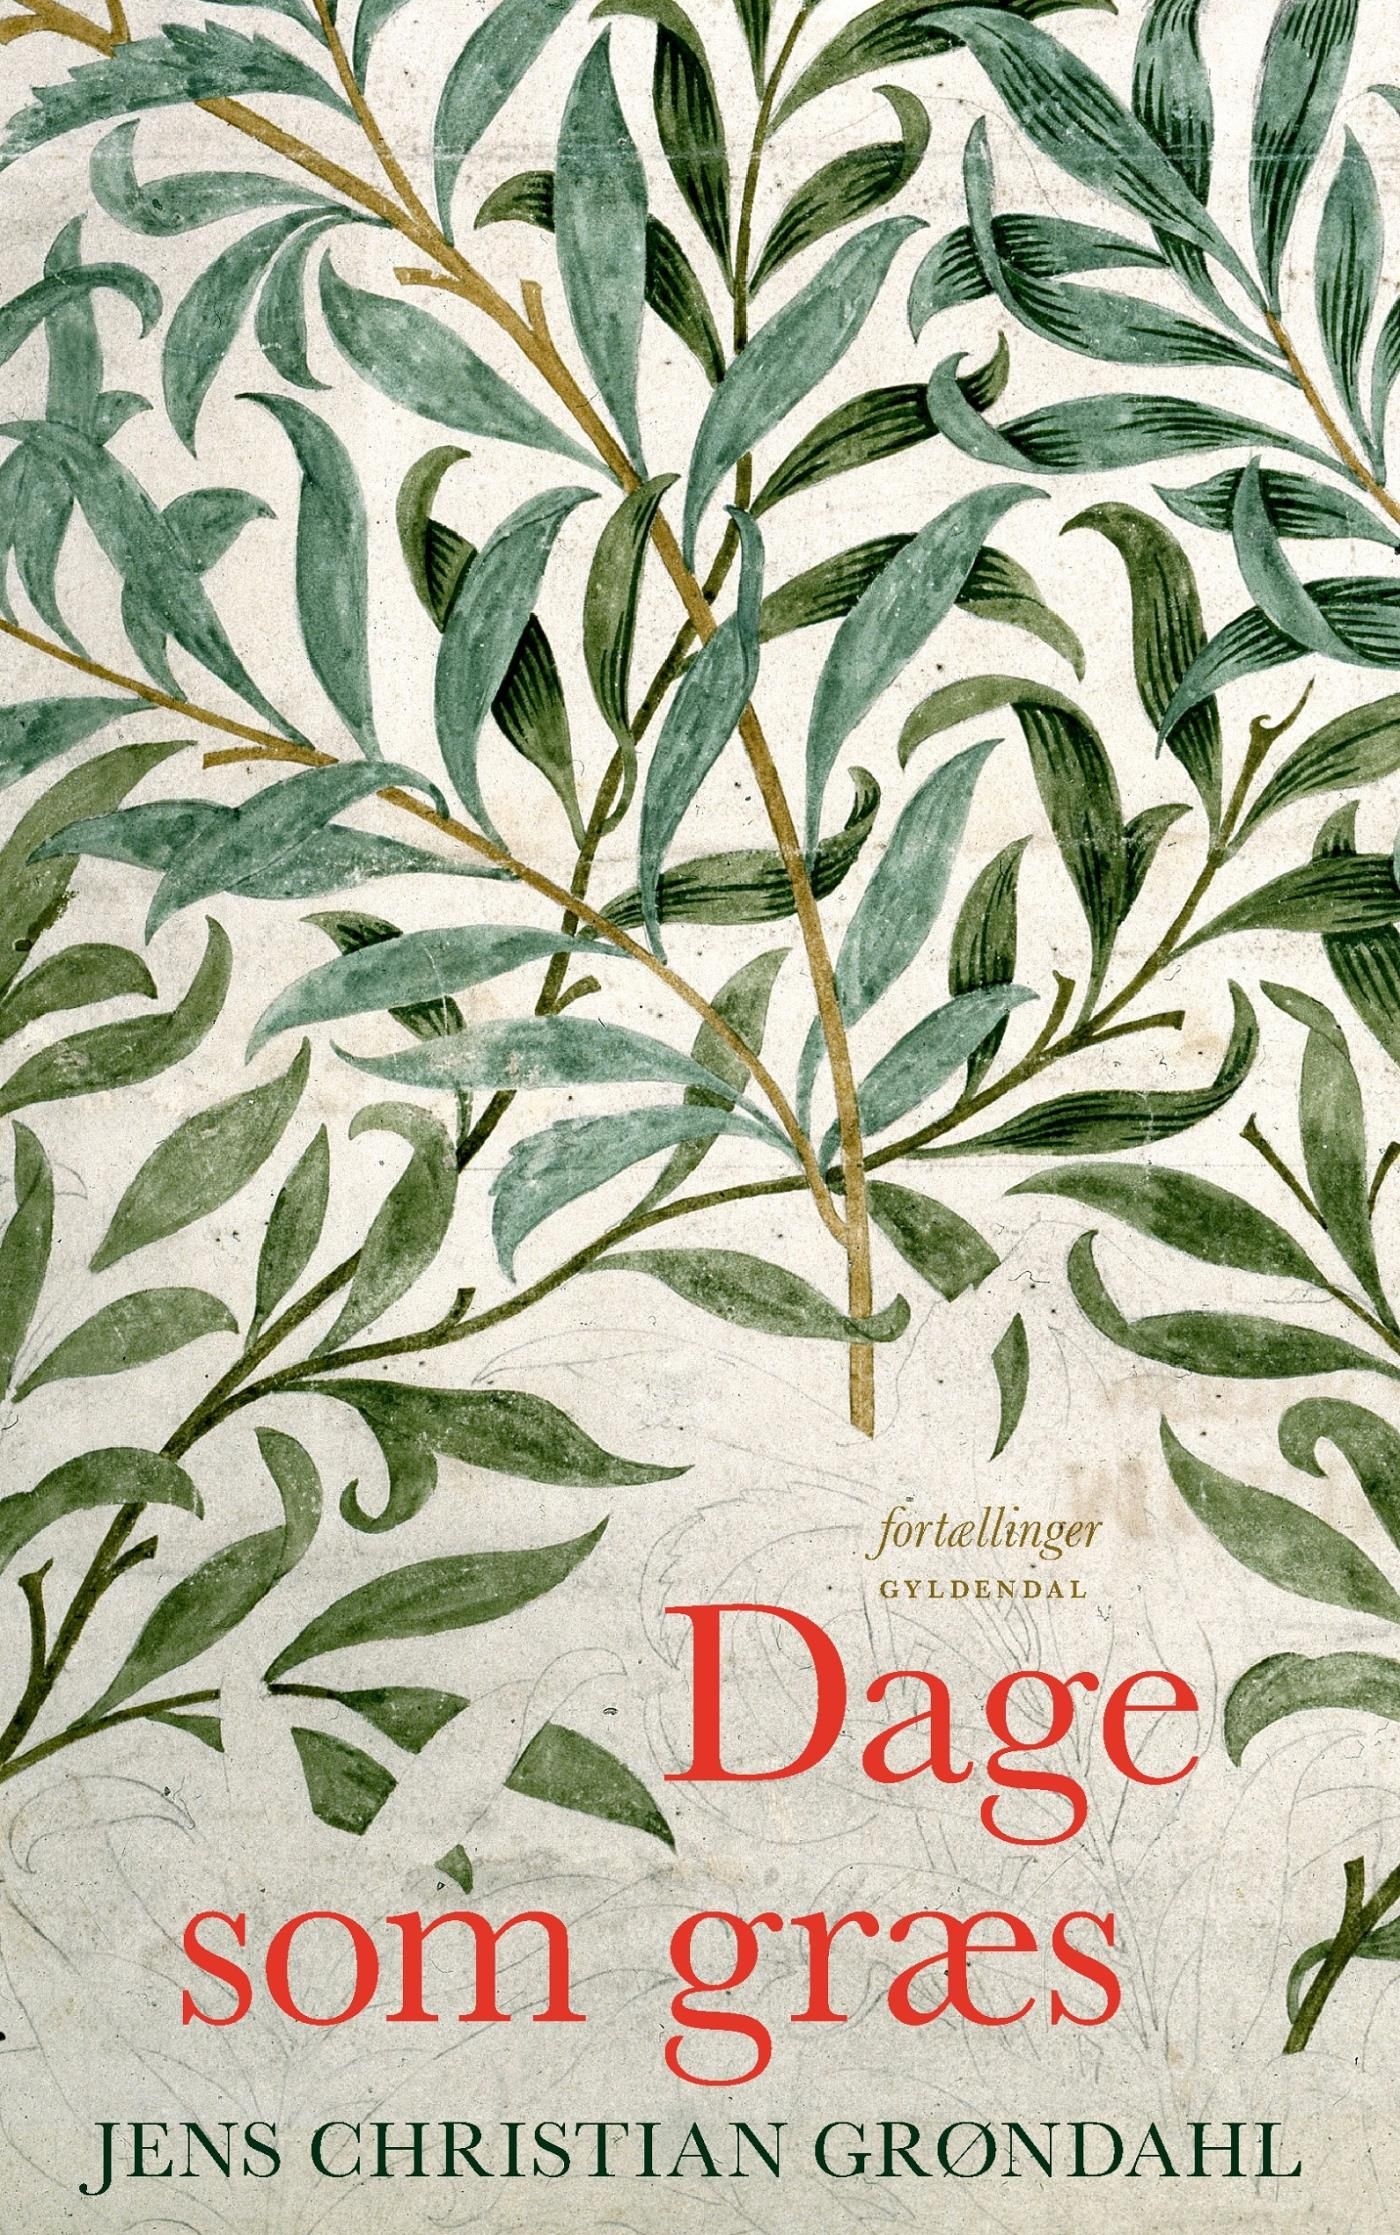 Dage som græs, audiobook by Jens Christian Grøndahl